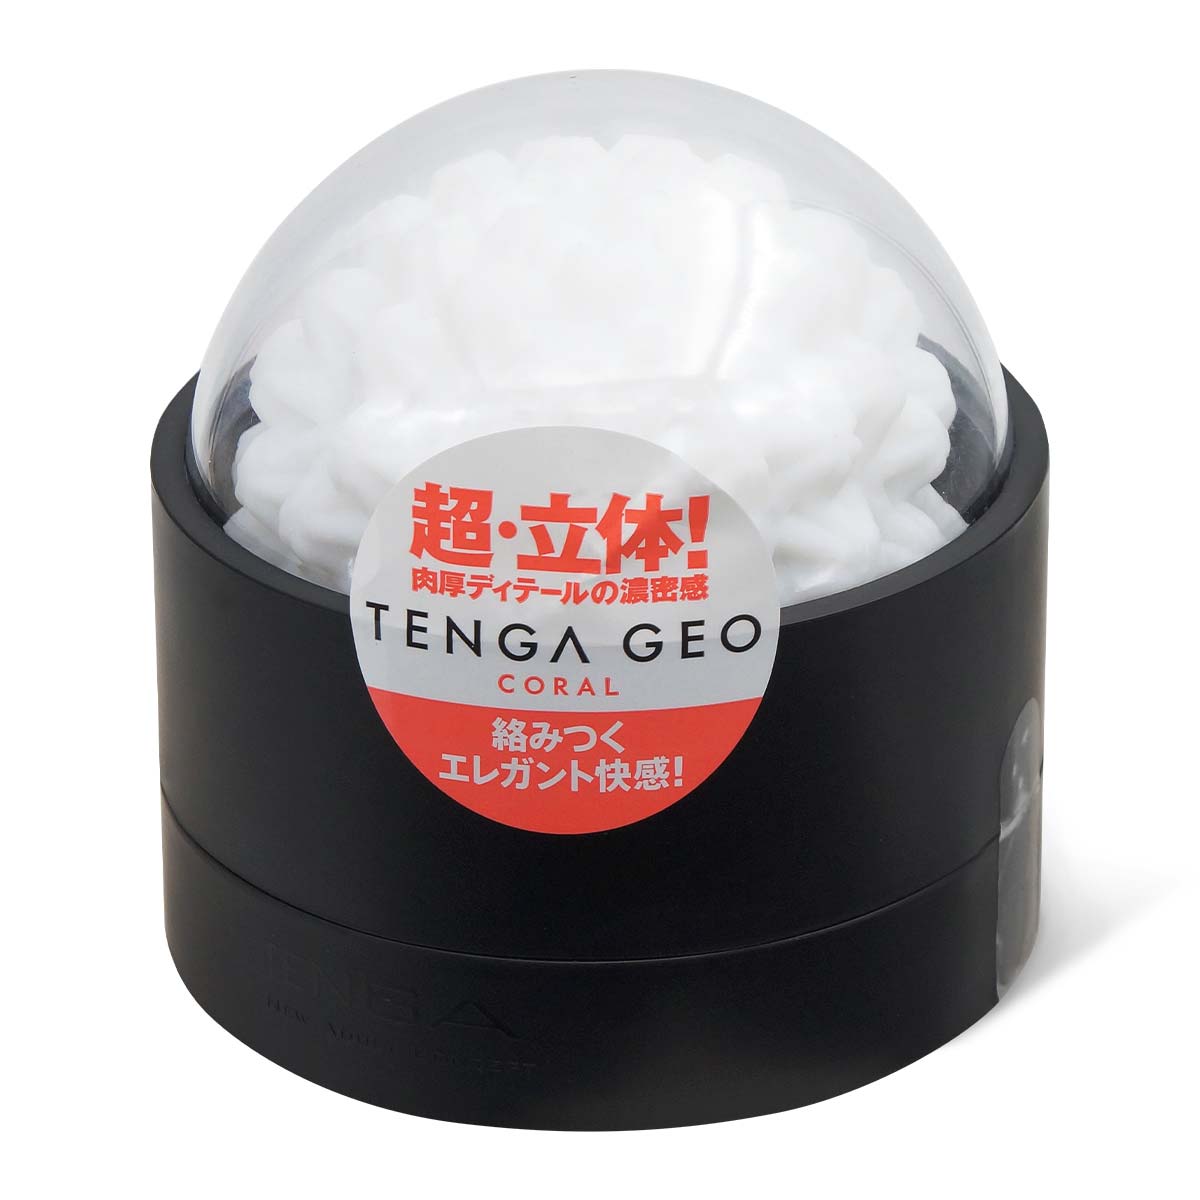 TENGA GEO 珊瑚球 飛機杯-p_1